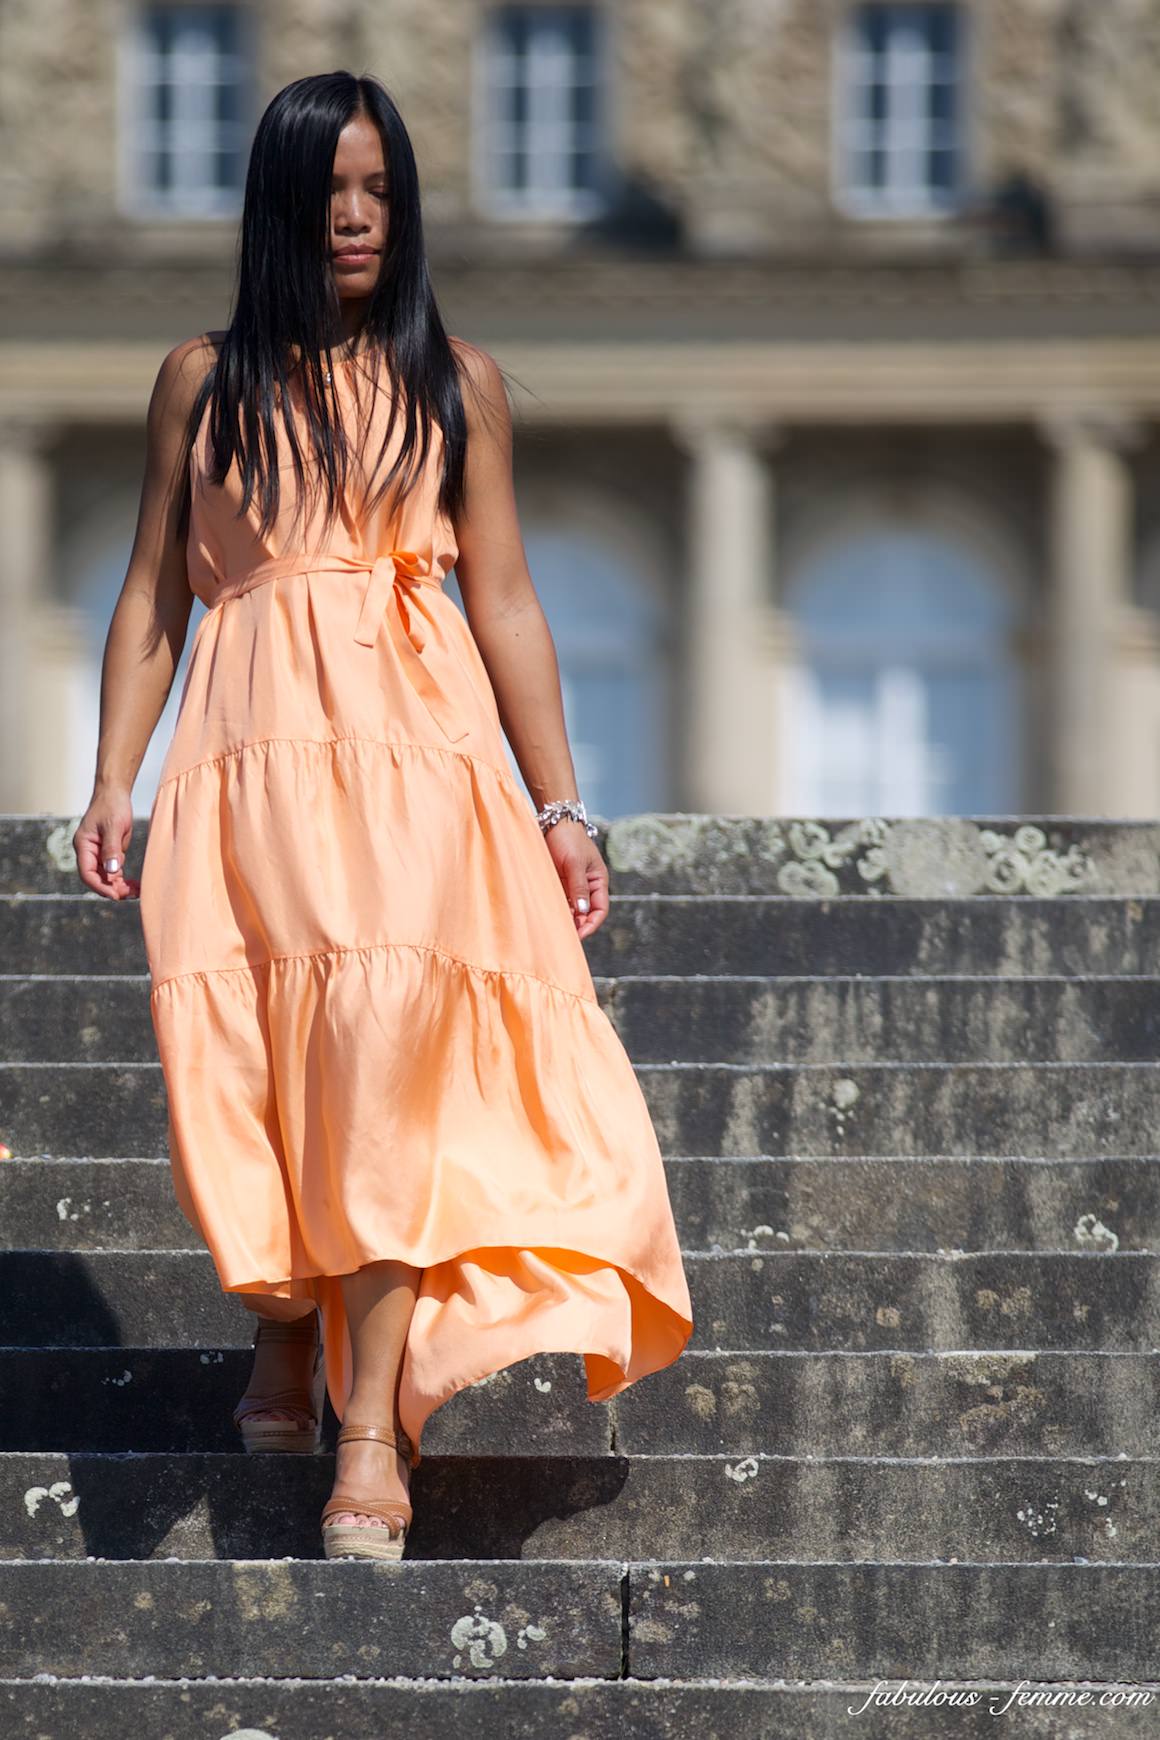 girl walking down castle steps - stunning